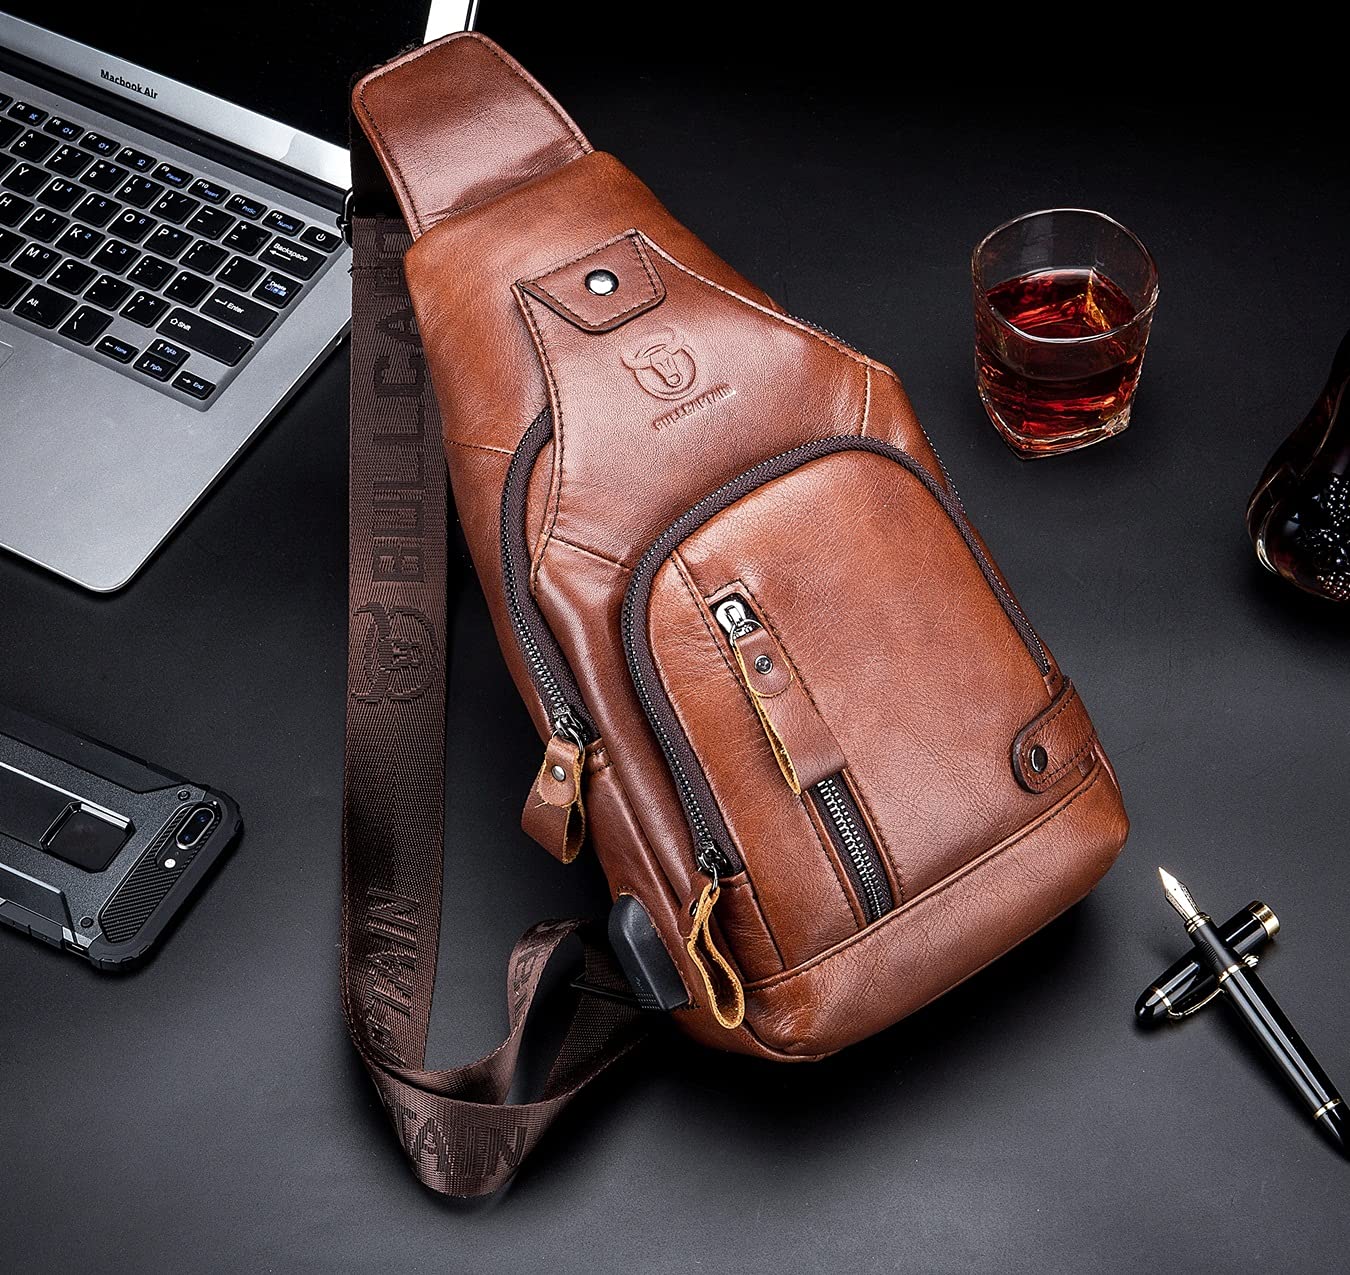 BULLCAPTAIN Men Crossbody Bag with USB Charging Port Genuine Leather Shoulder Sling Chest Bag Travel Hiking Backpack (Brown)